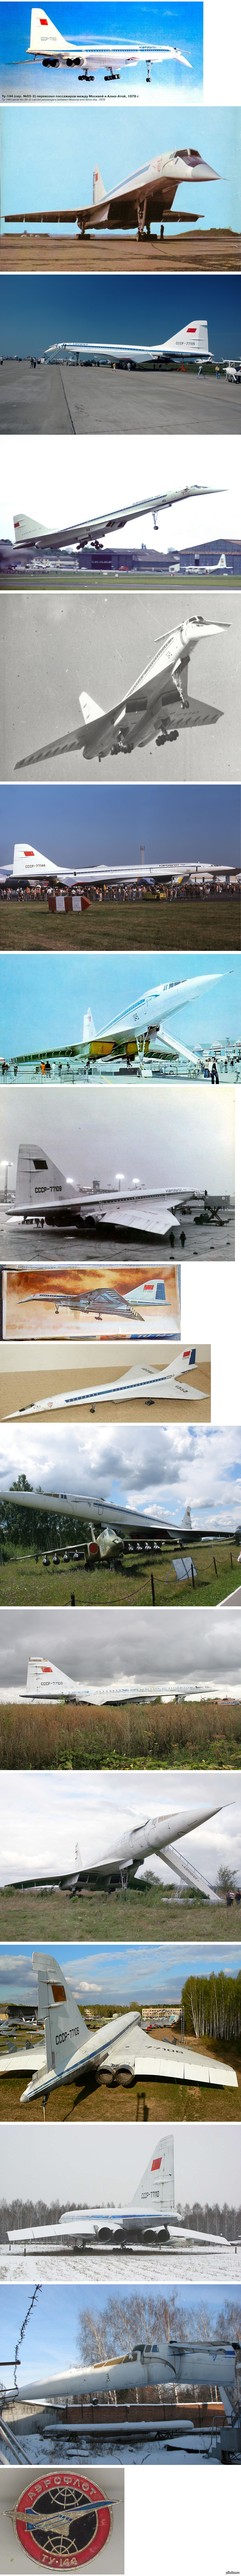 «Смертельное пике»: как падал Ту-144. 46 лет назад в Ле-Бурже разбился советский Ту-144